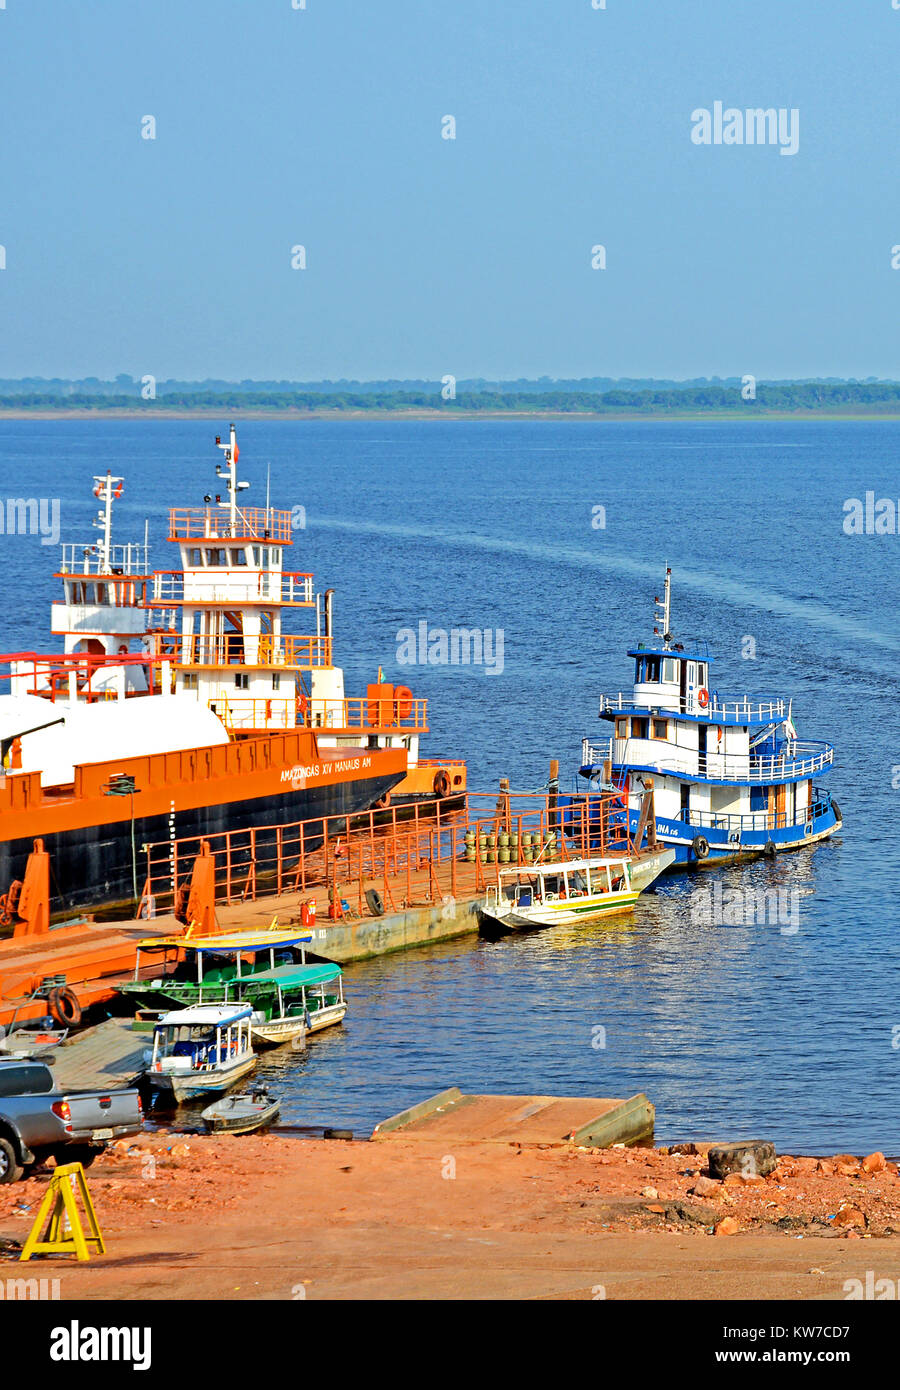 boats on Rio Negro, Manaus, Amazonas, Bzazil Stock Photo